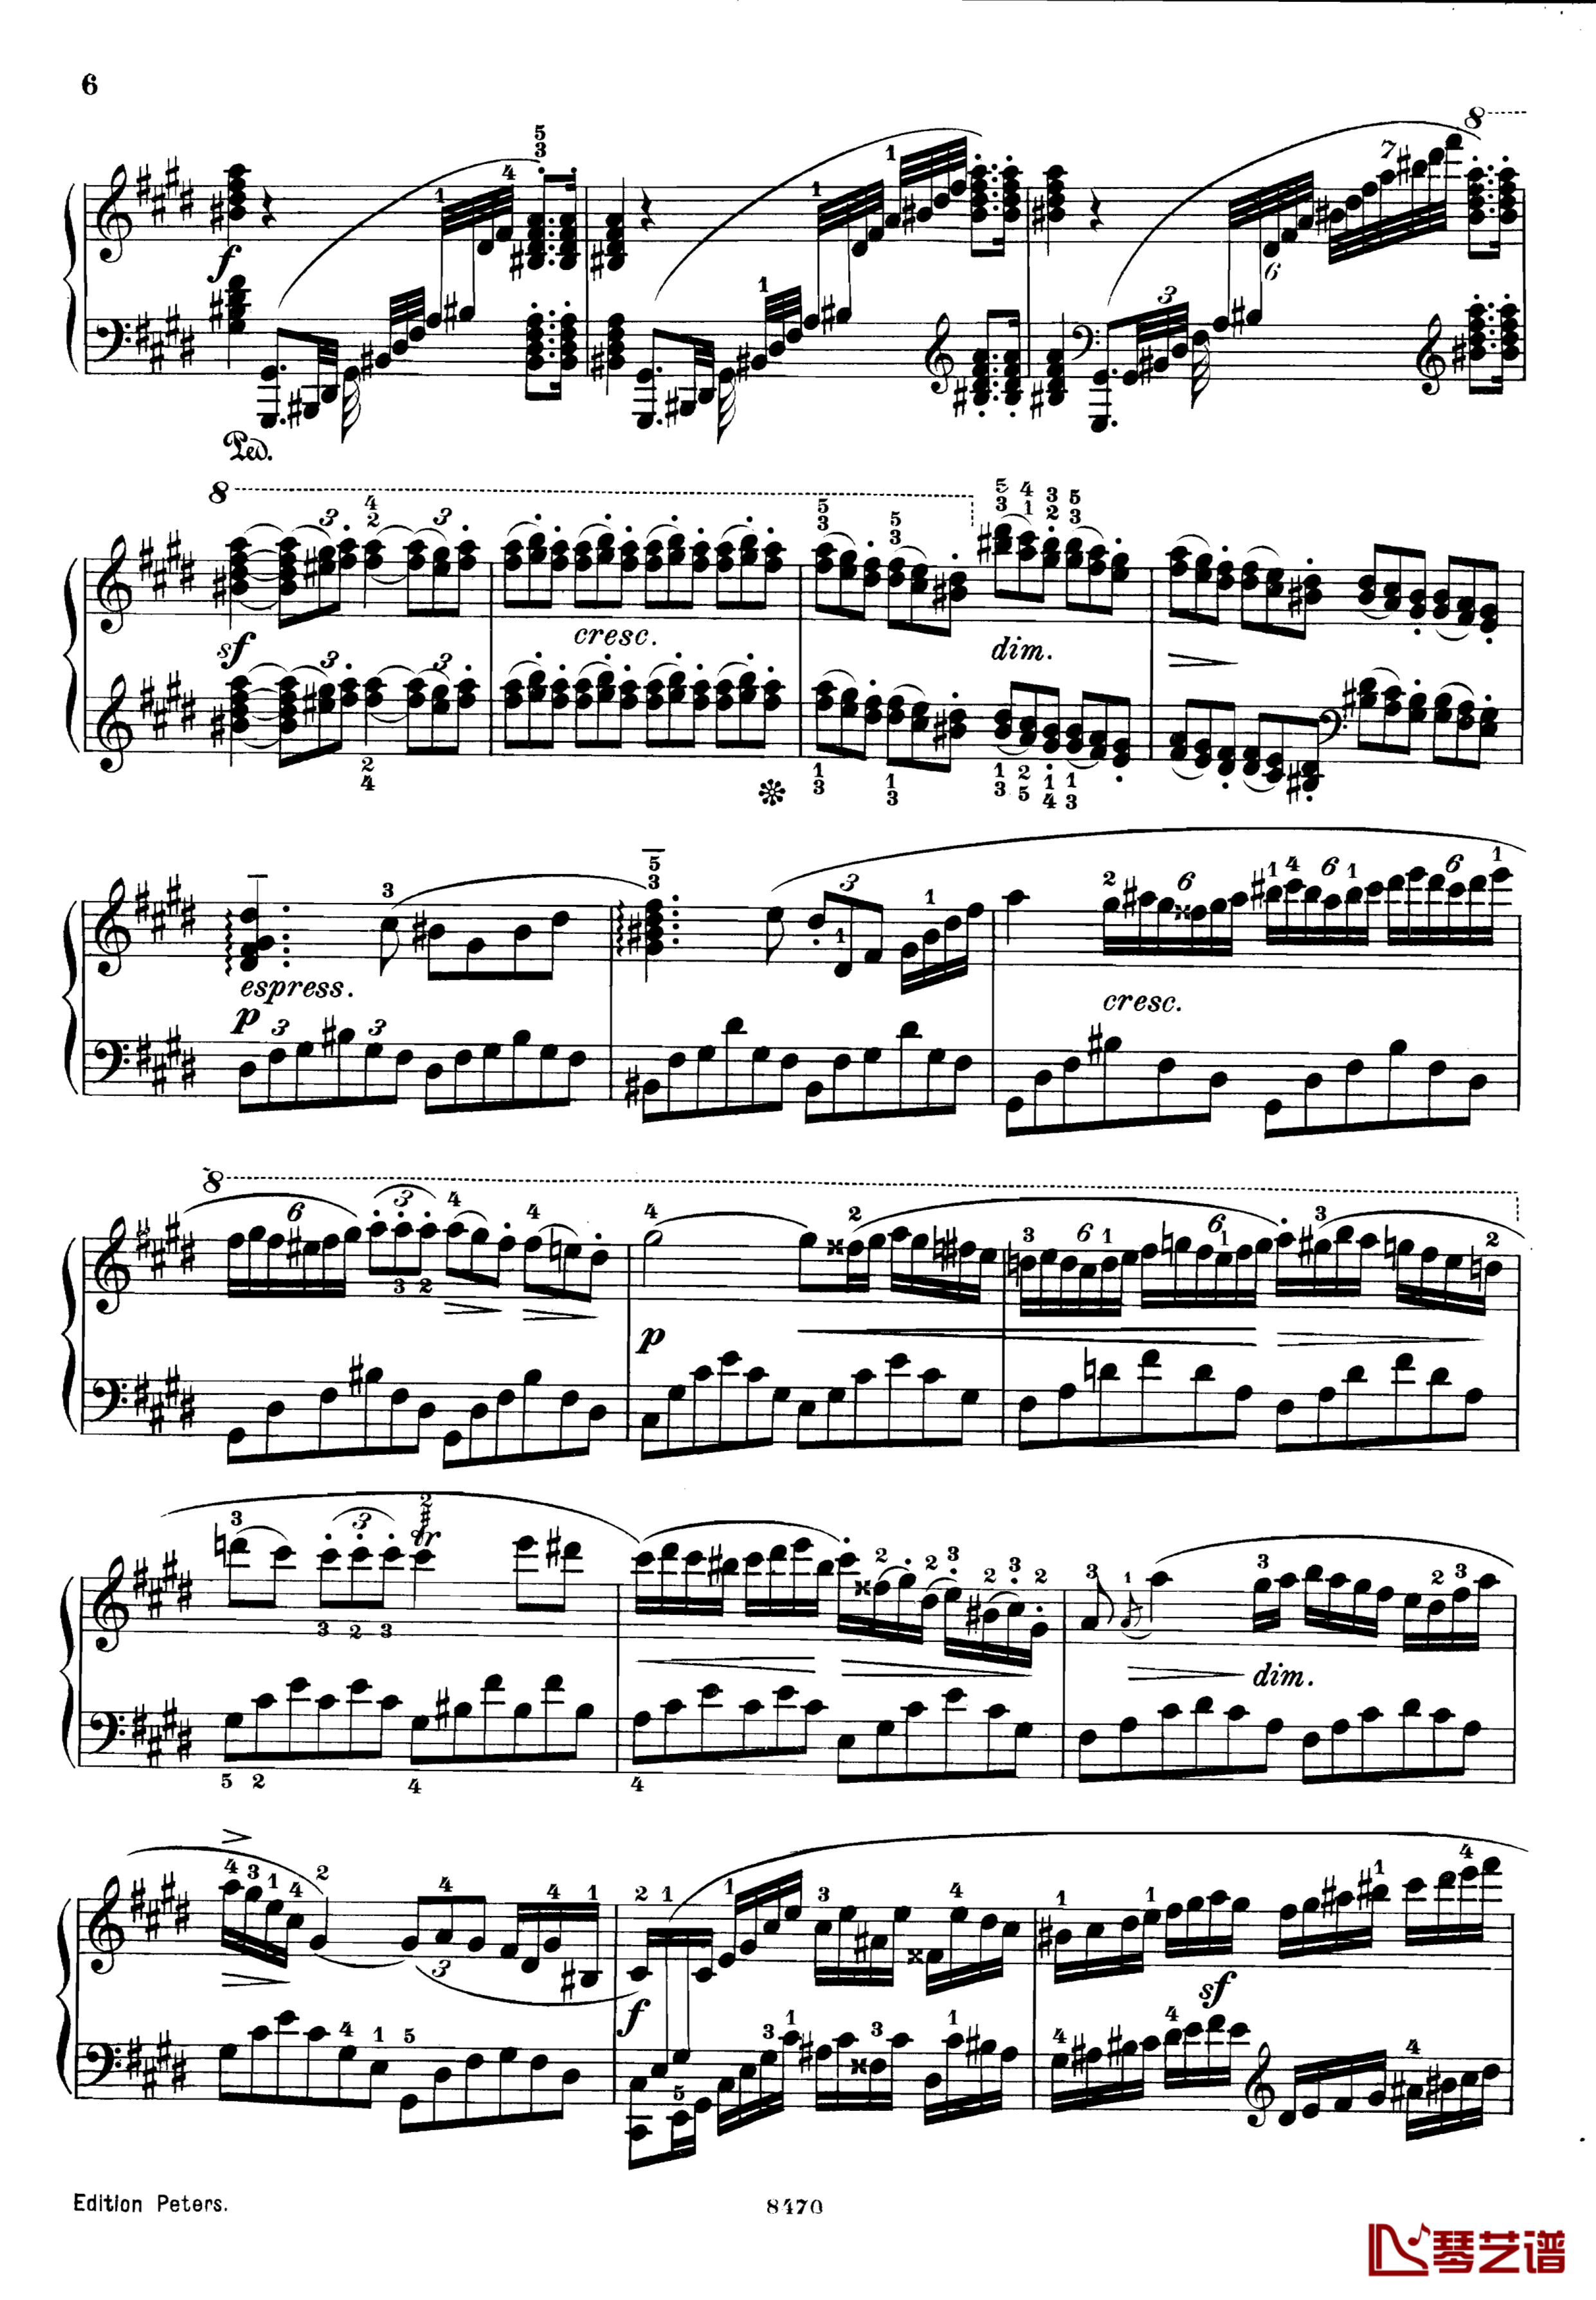 升c小调第三钢琴协奏曲Op.55钢琴谱-克里斯蒂安-里斯6